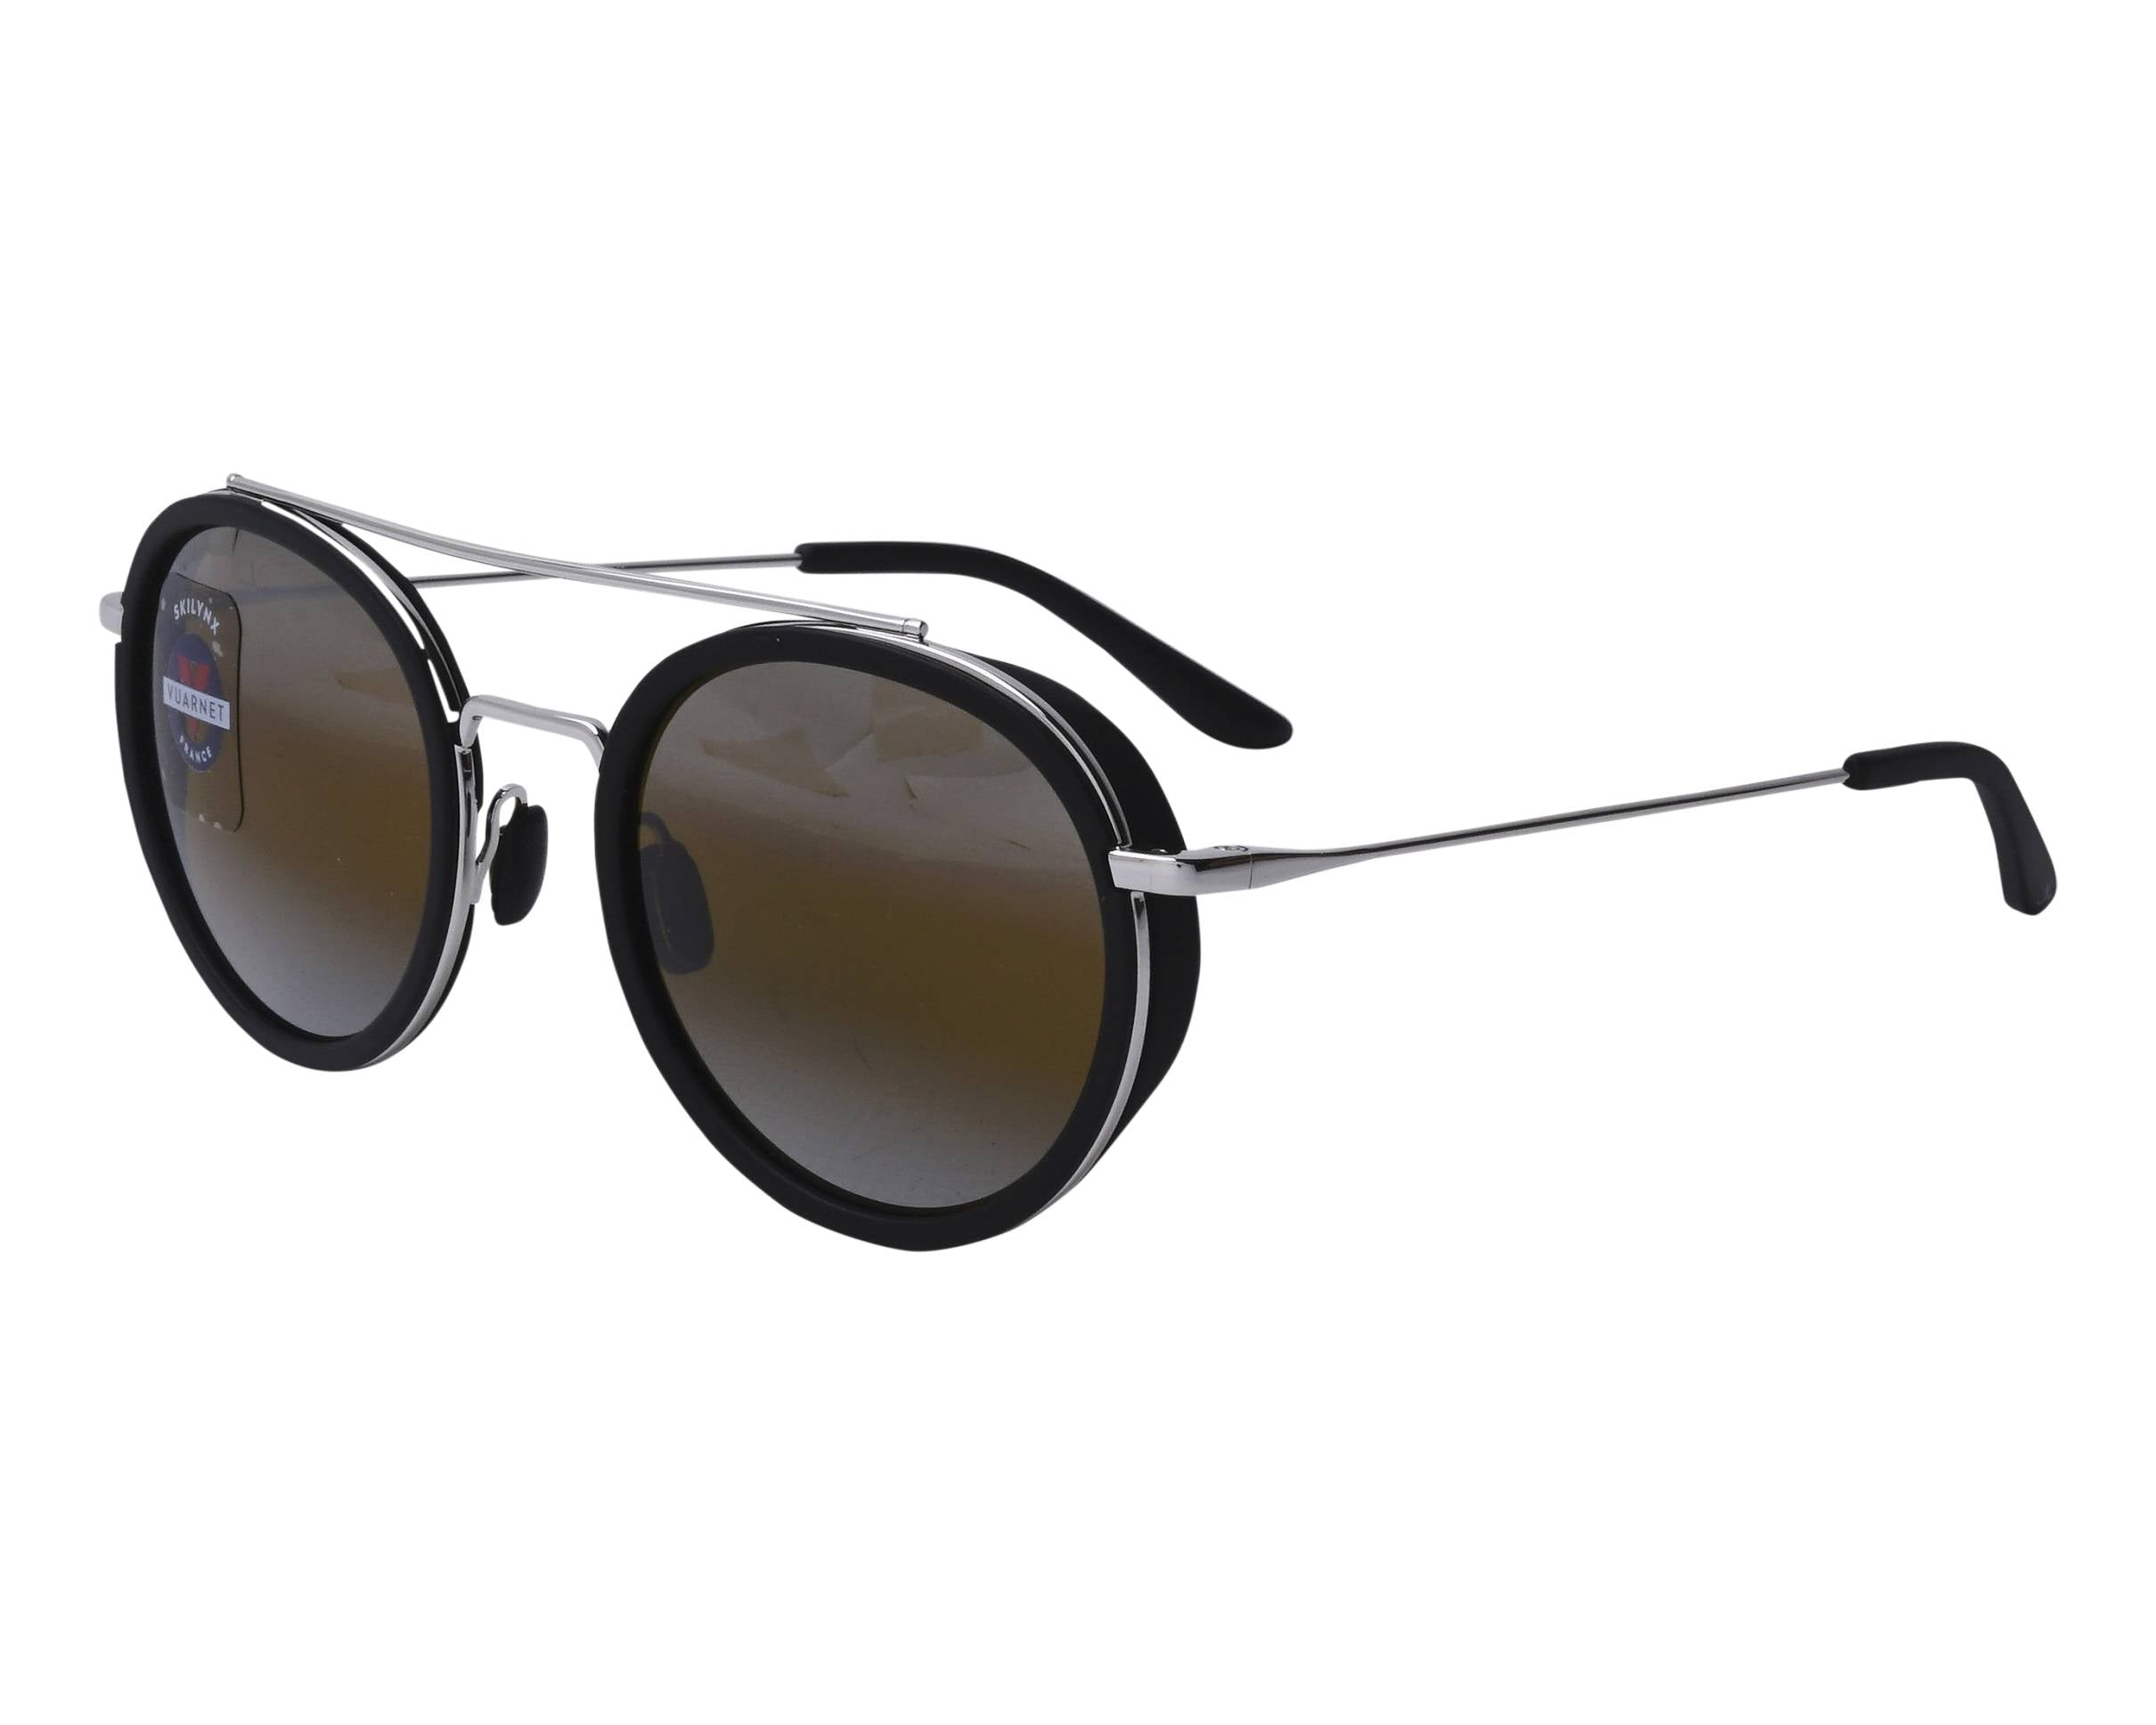 vuarnet Edge VL1613 Sunglasses as worn by Daniel Craig